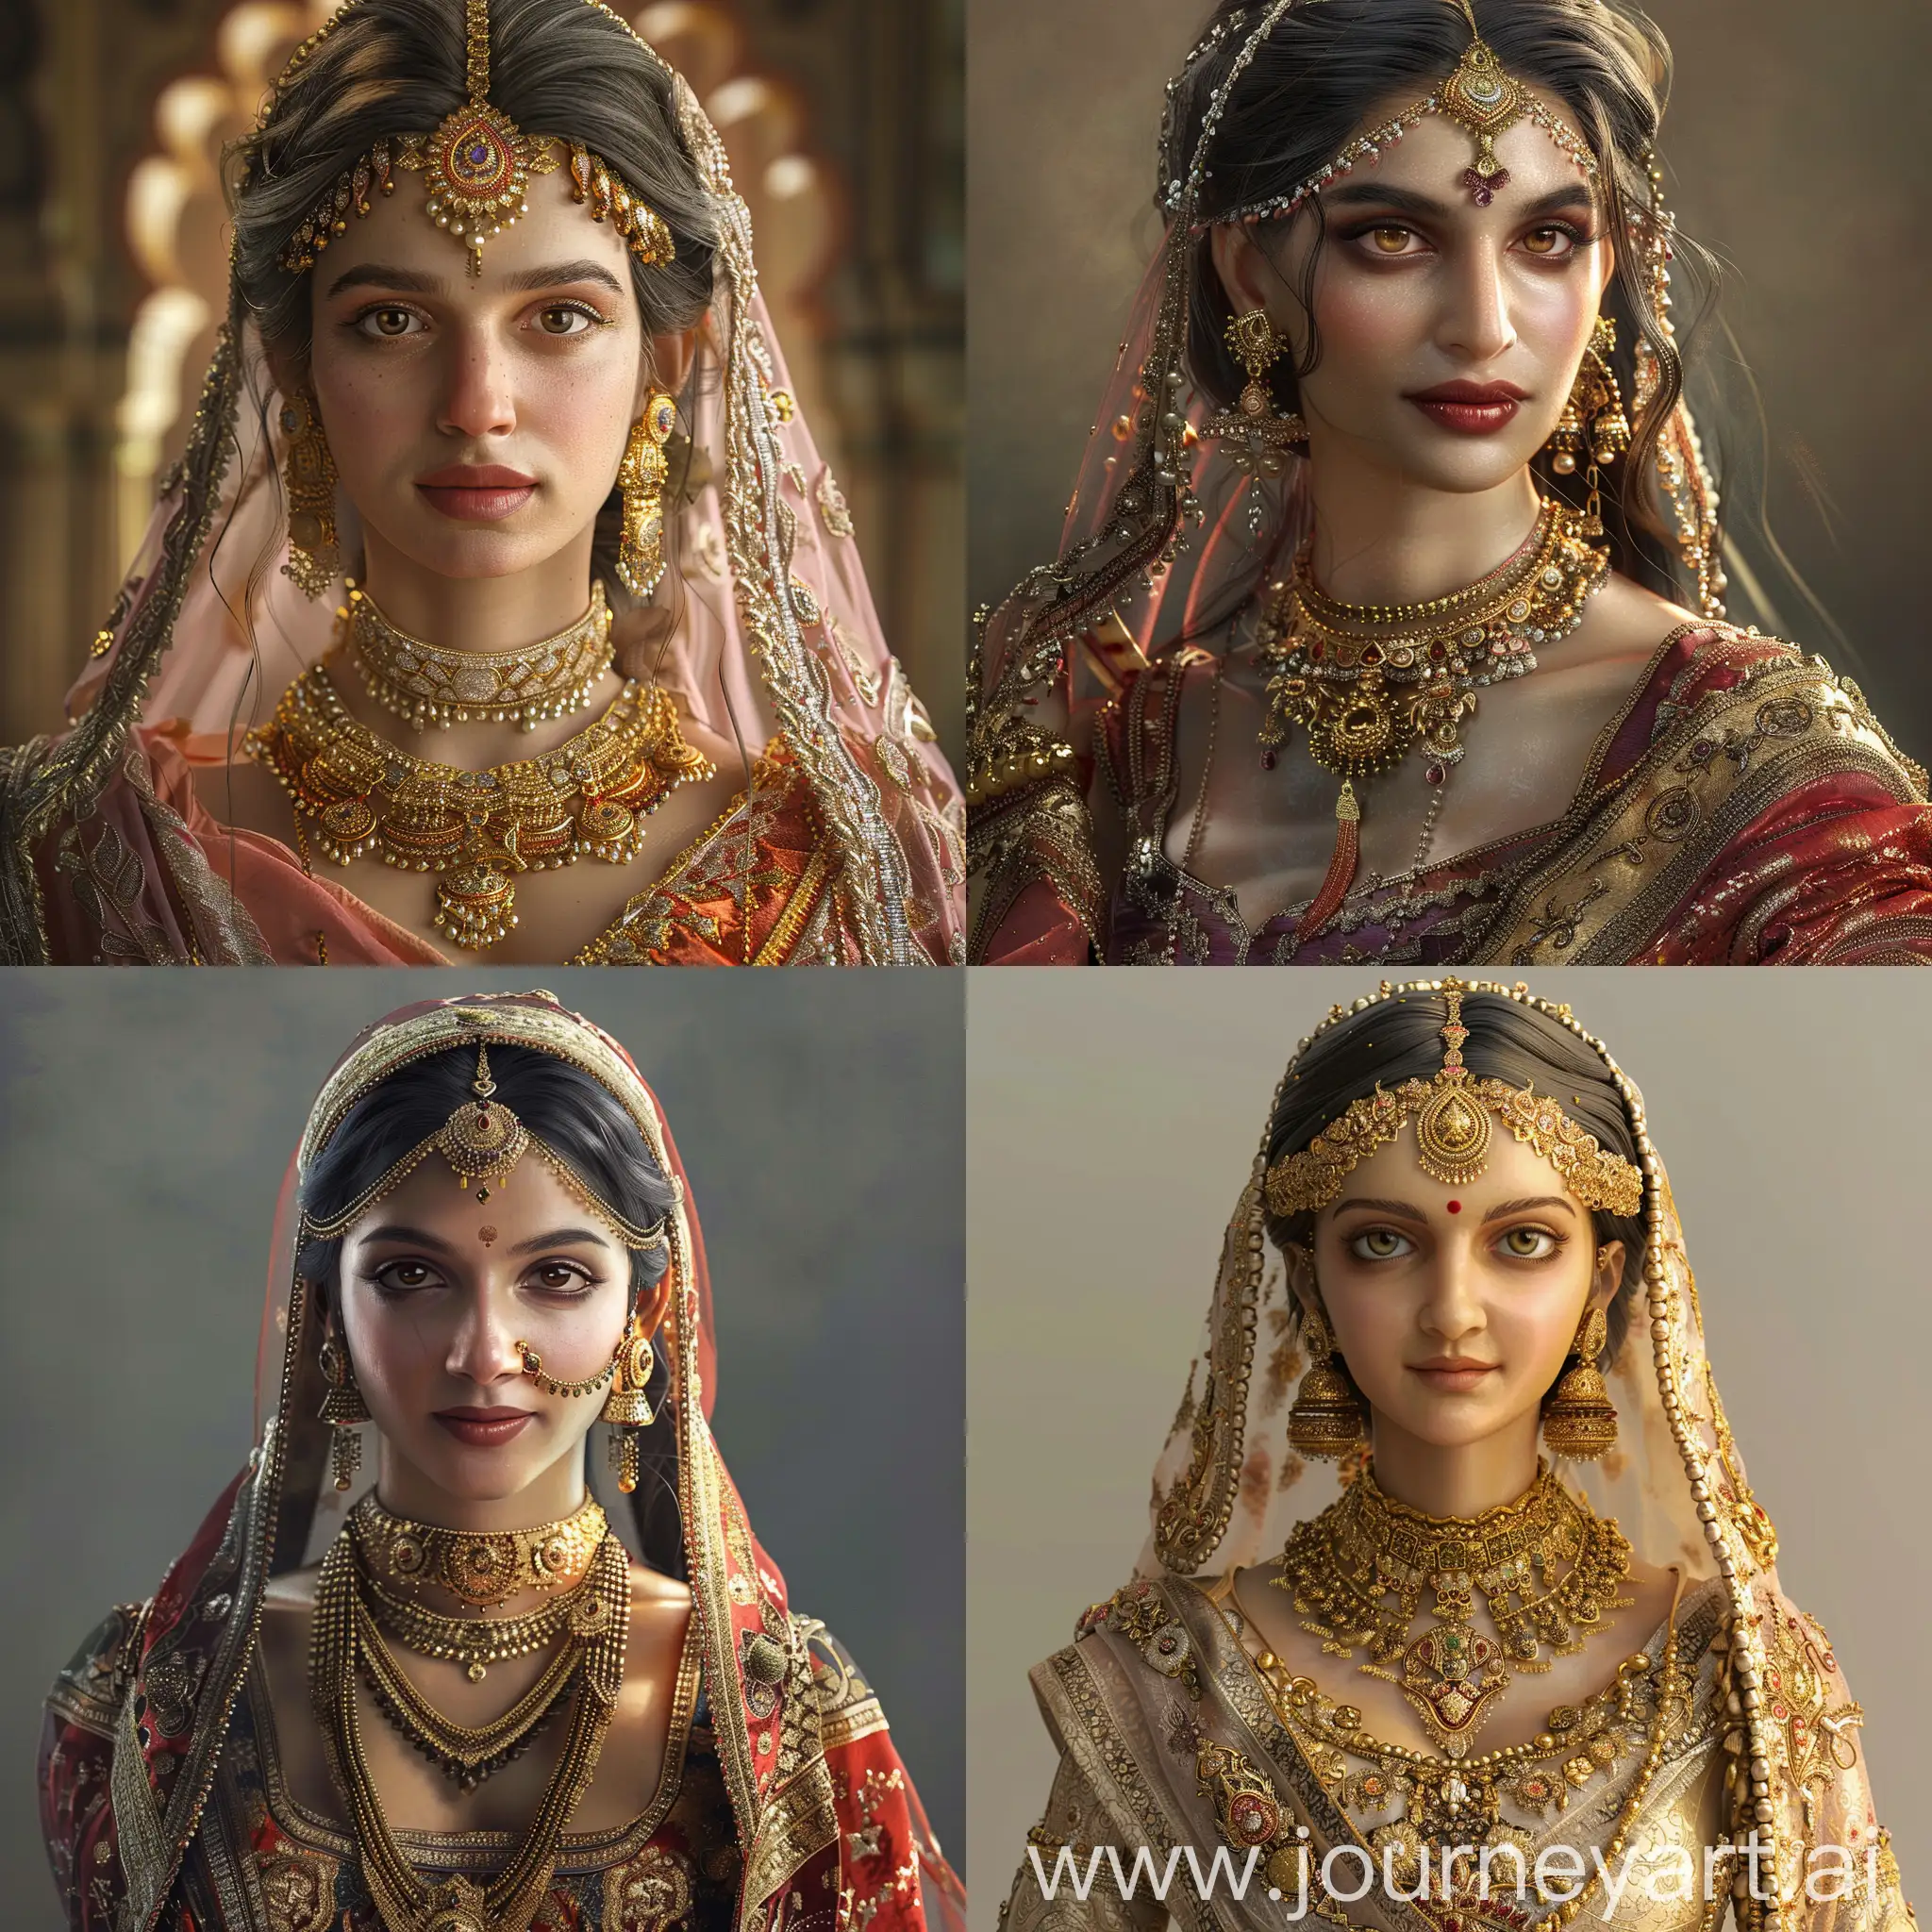 Photorealistic-Portrayal-of-Shree-Rajput-Padmavati-in-Royal-Rajasthani-Attire